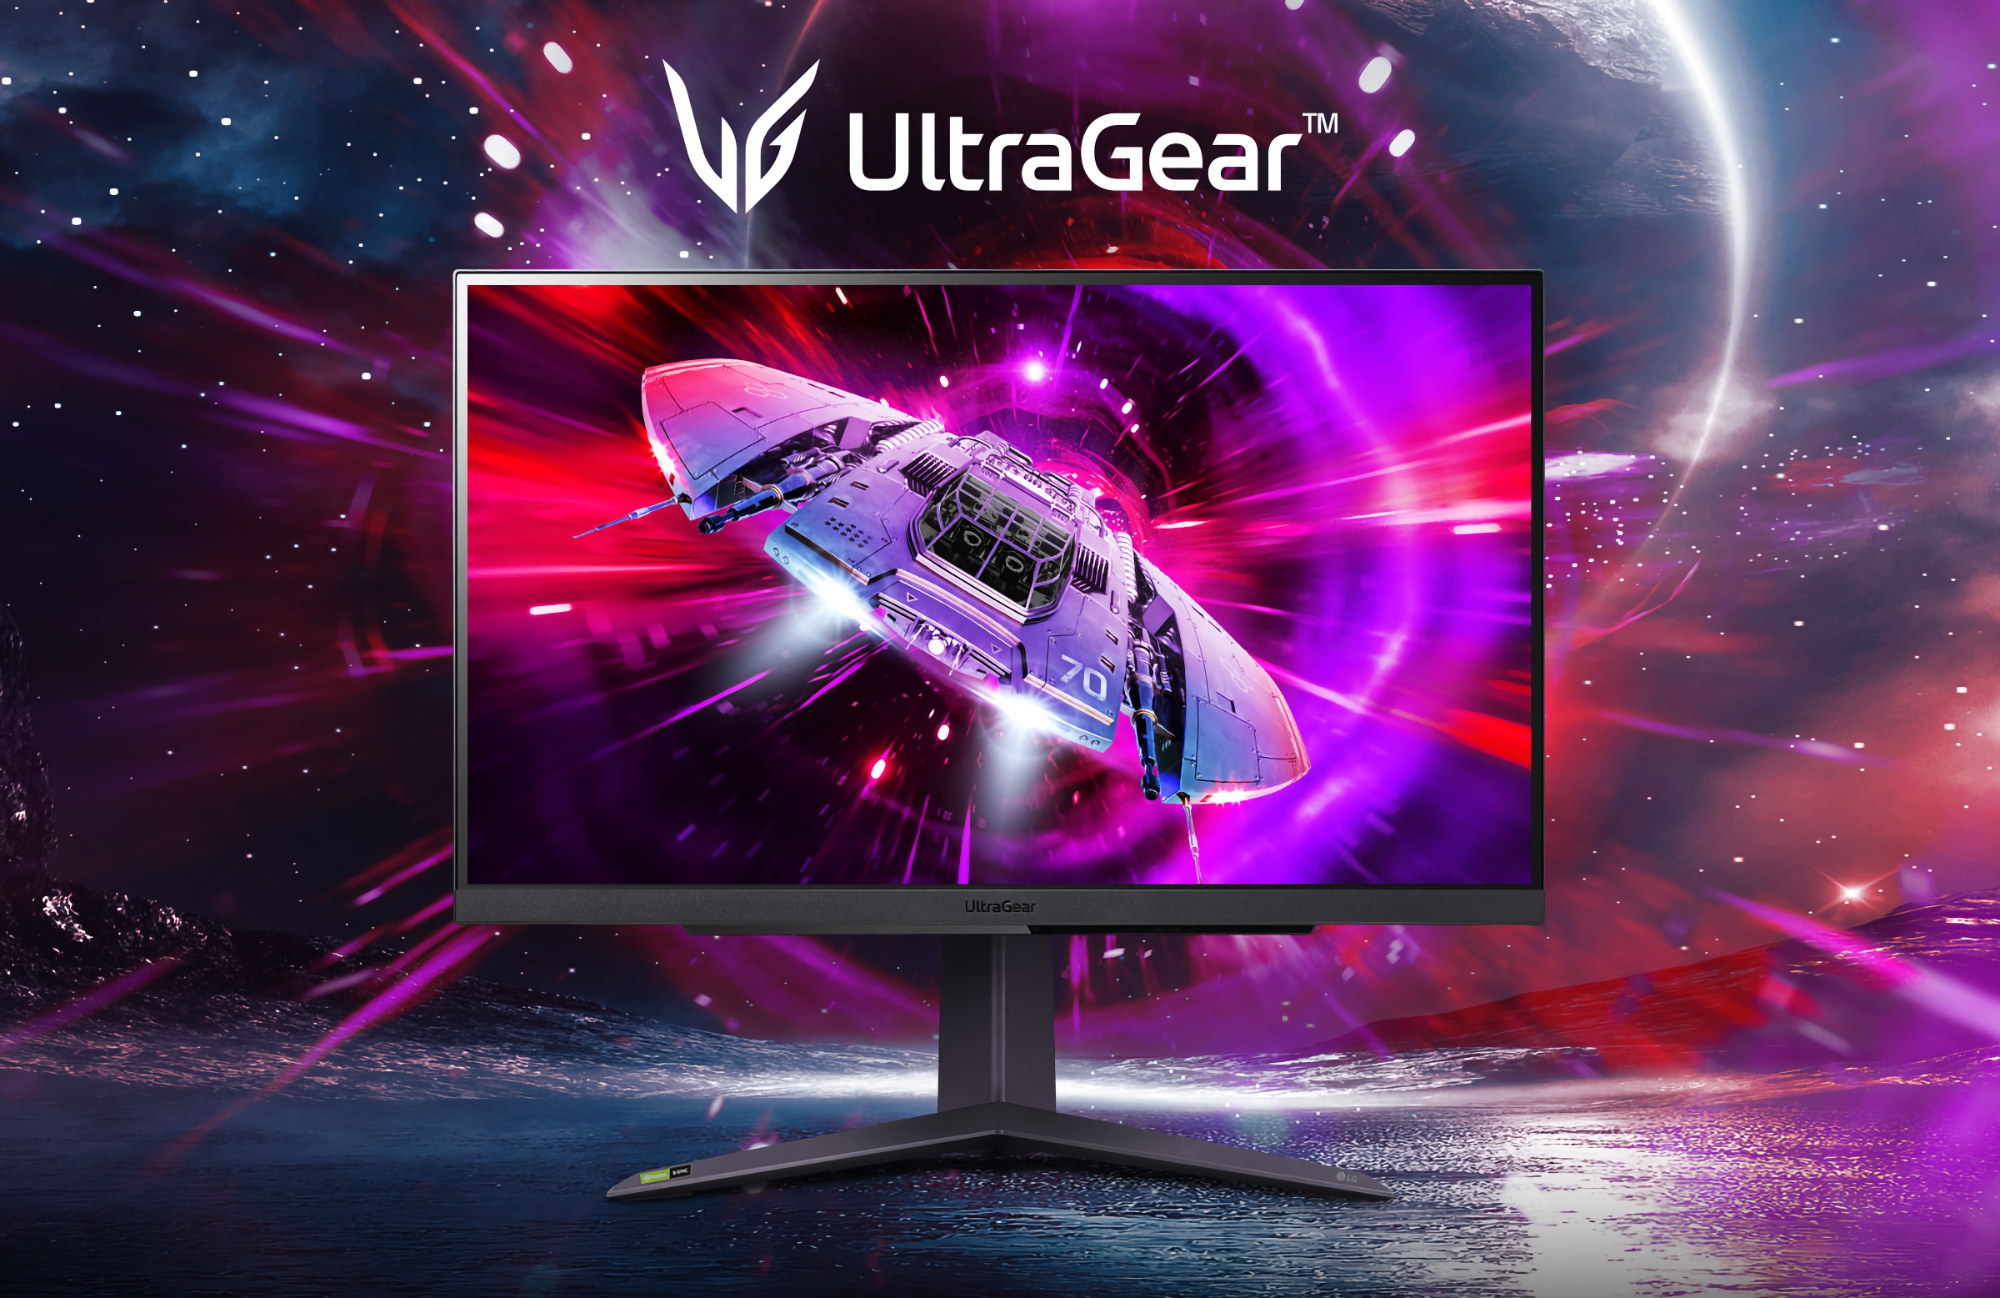 LG stellt den UltraGear 27GR75Q vor: Gaming-Monitor mit 2K-Auflösung, 165 Hz Bildwiederholfrequenz und AMD FreeSync Premium-Unterstützung